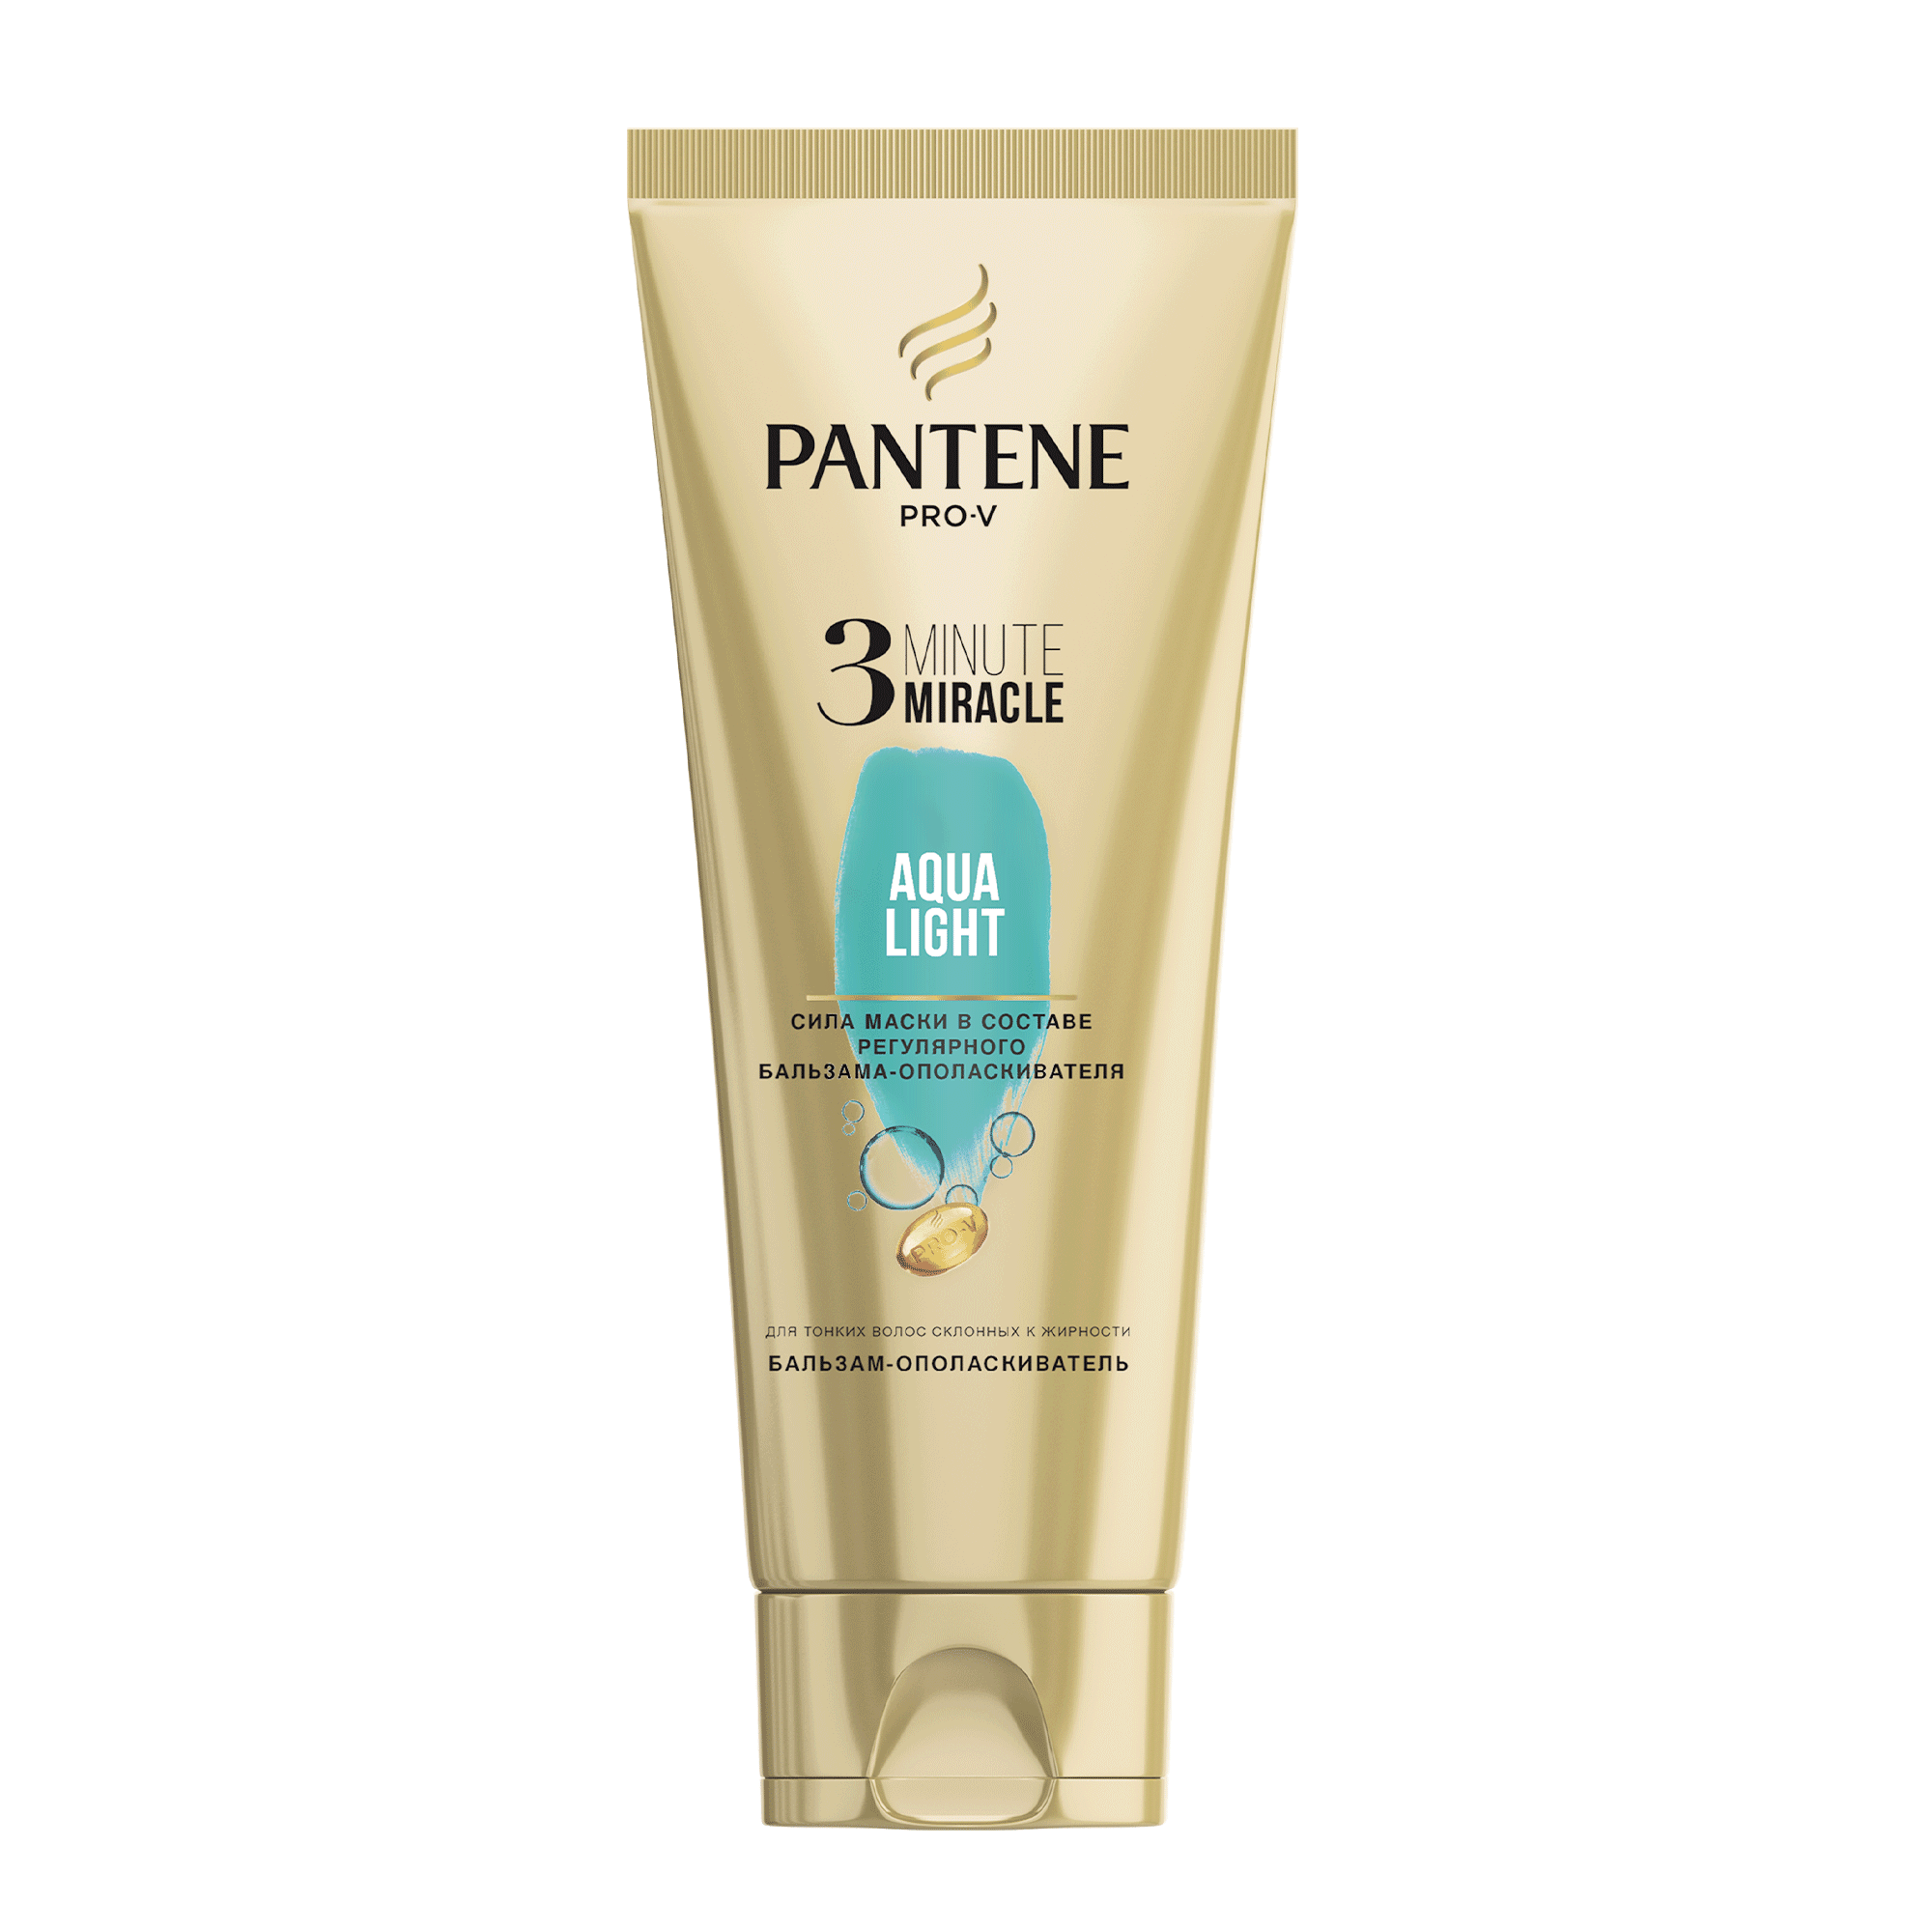 Купить Бальзам для волос PANTENE Pro-V 3 Aqua Light 200 мл, pro-V 3 Minute Miracle Aqua Light